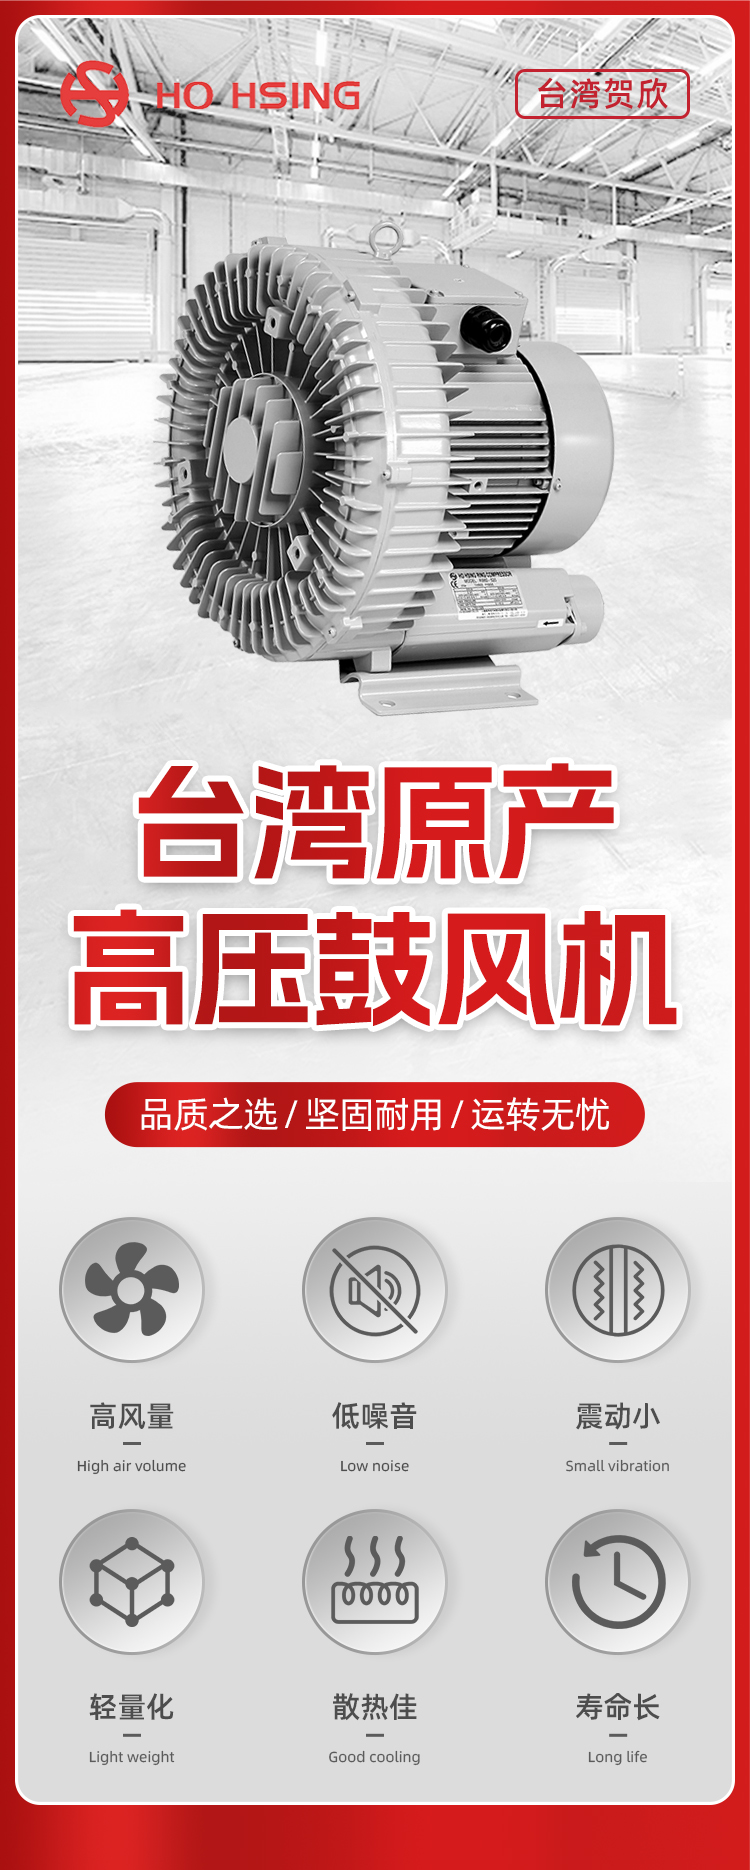 吹吸两用高压鼓风机 低噪音耐磨鼓风机 RB50-510 Ho Hsing贺欣示例图1